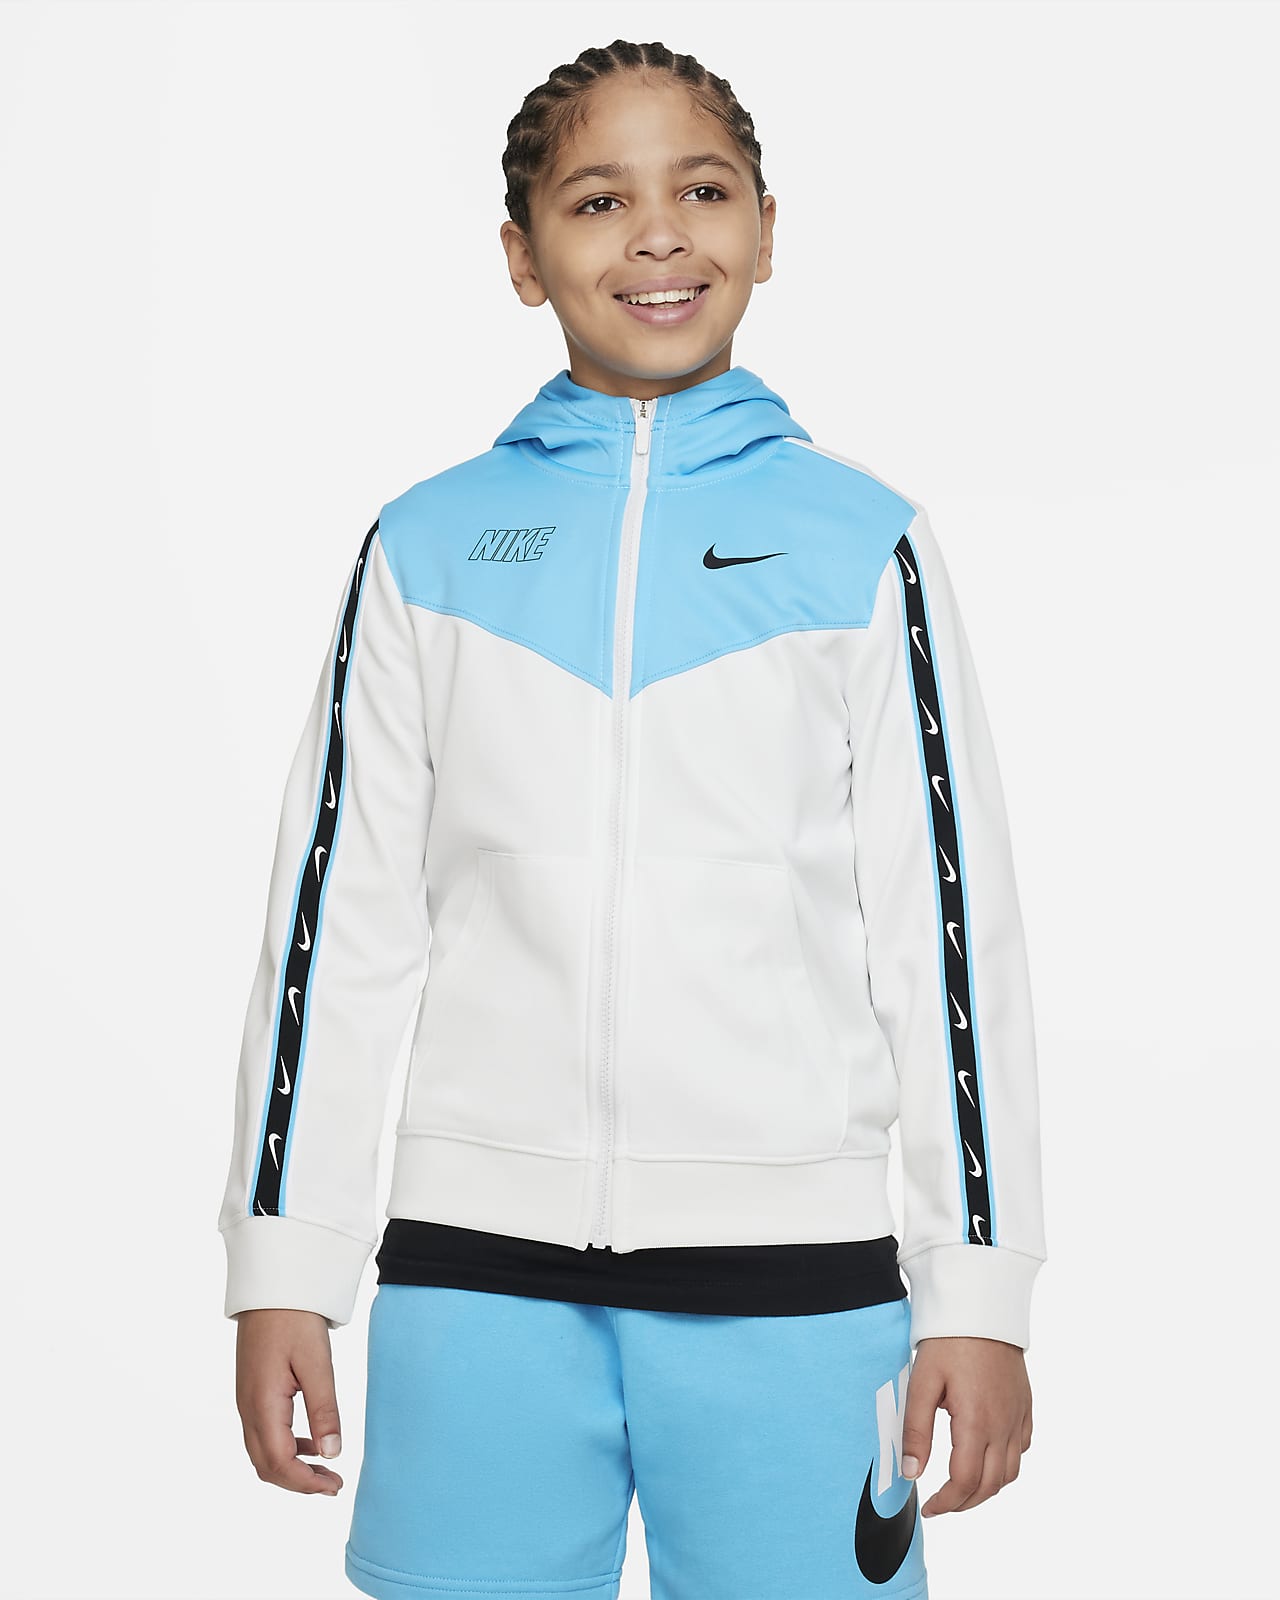 Μπλούζα με κουκούλα και φερμουάρ σε όλο το μήκος Nike Sportswear Repeat για μεγάλα αγόρια